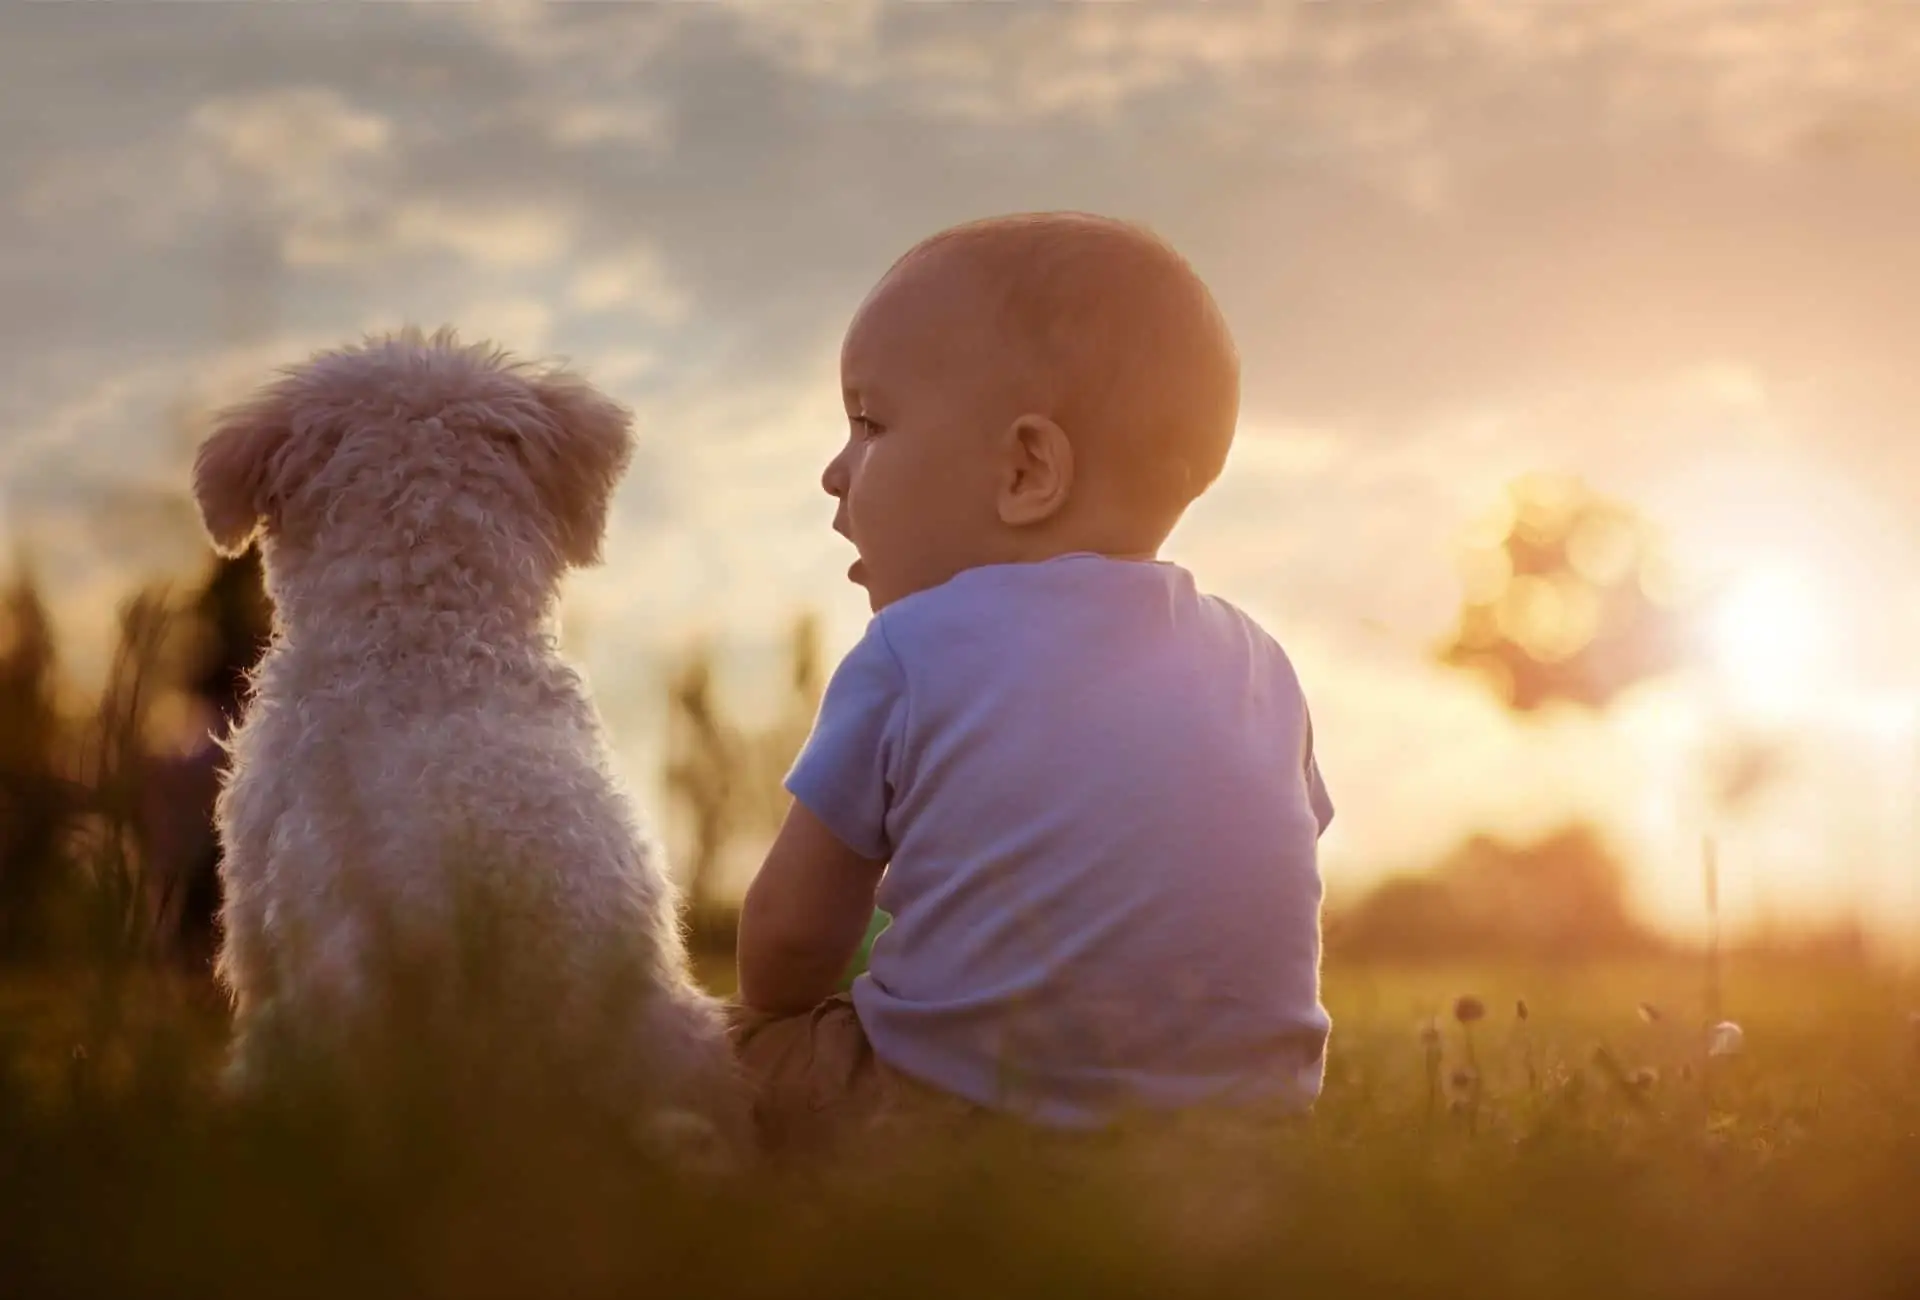 Boy sitting in a field beside a dog.